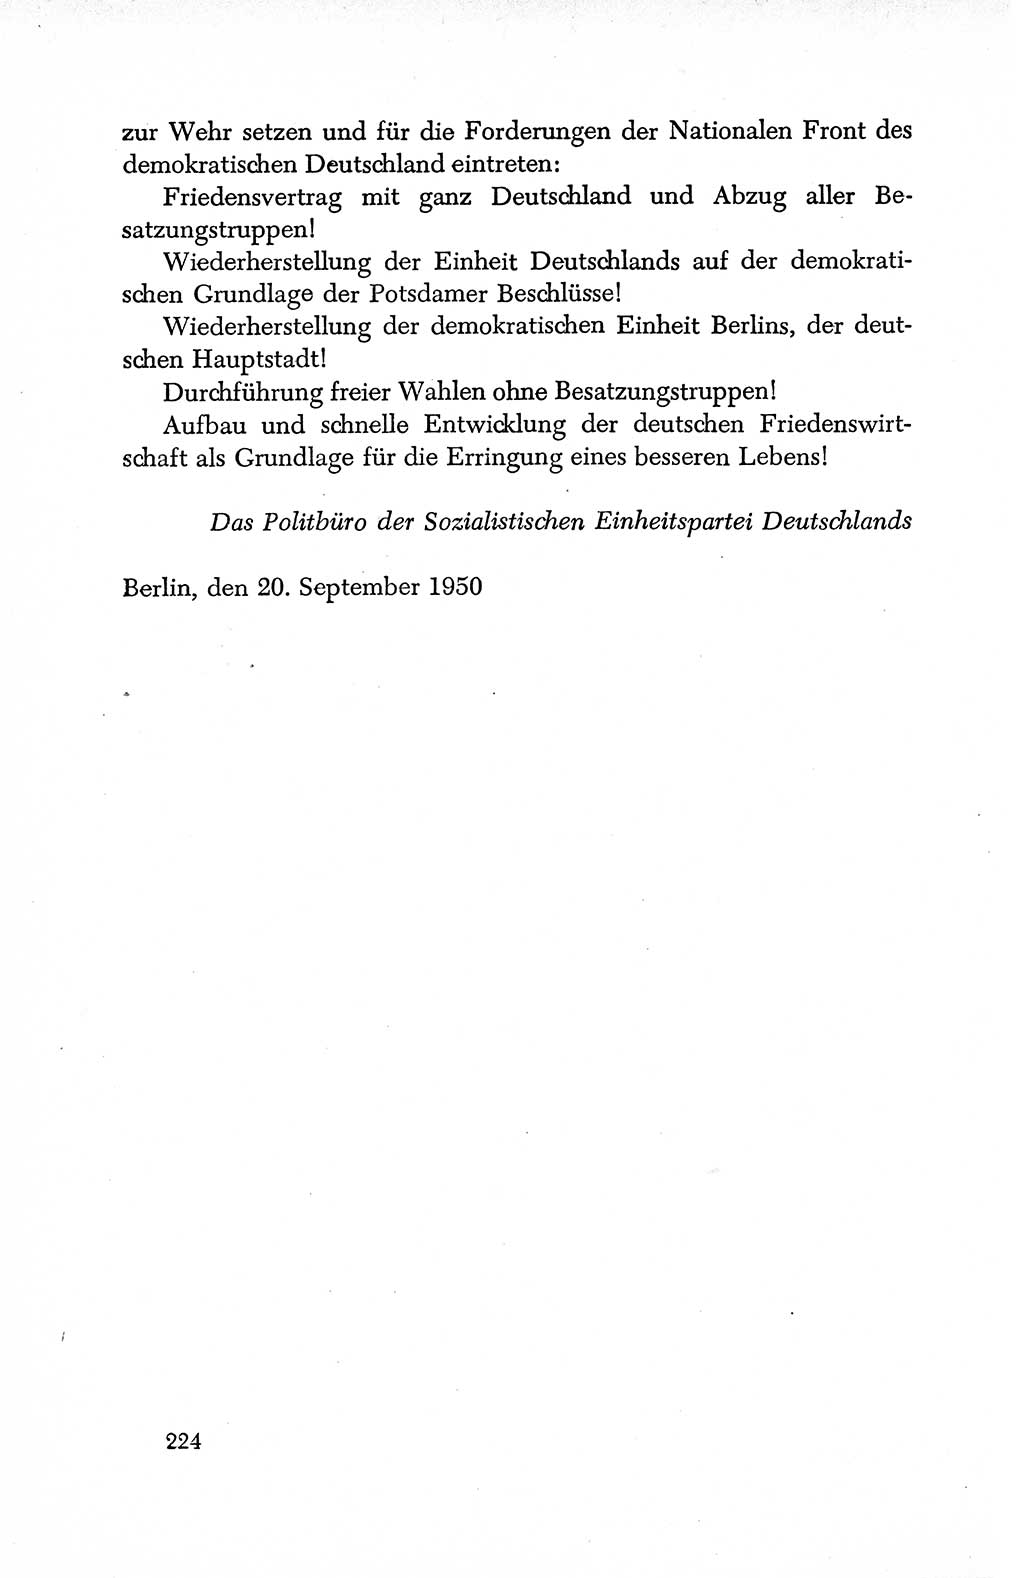 Dokumente der Sozialistischen Einheitspartei Deutschlands (SED) [Deutsche Demokratische Republik (DDR)] 1950-1952, Seite 224 (Dok. SED DDR 1950-1952, S. 224)